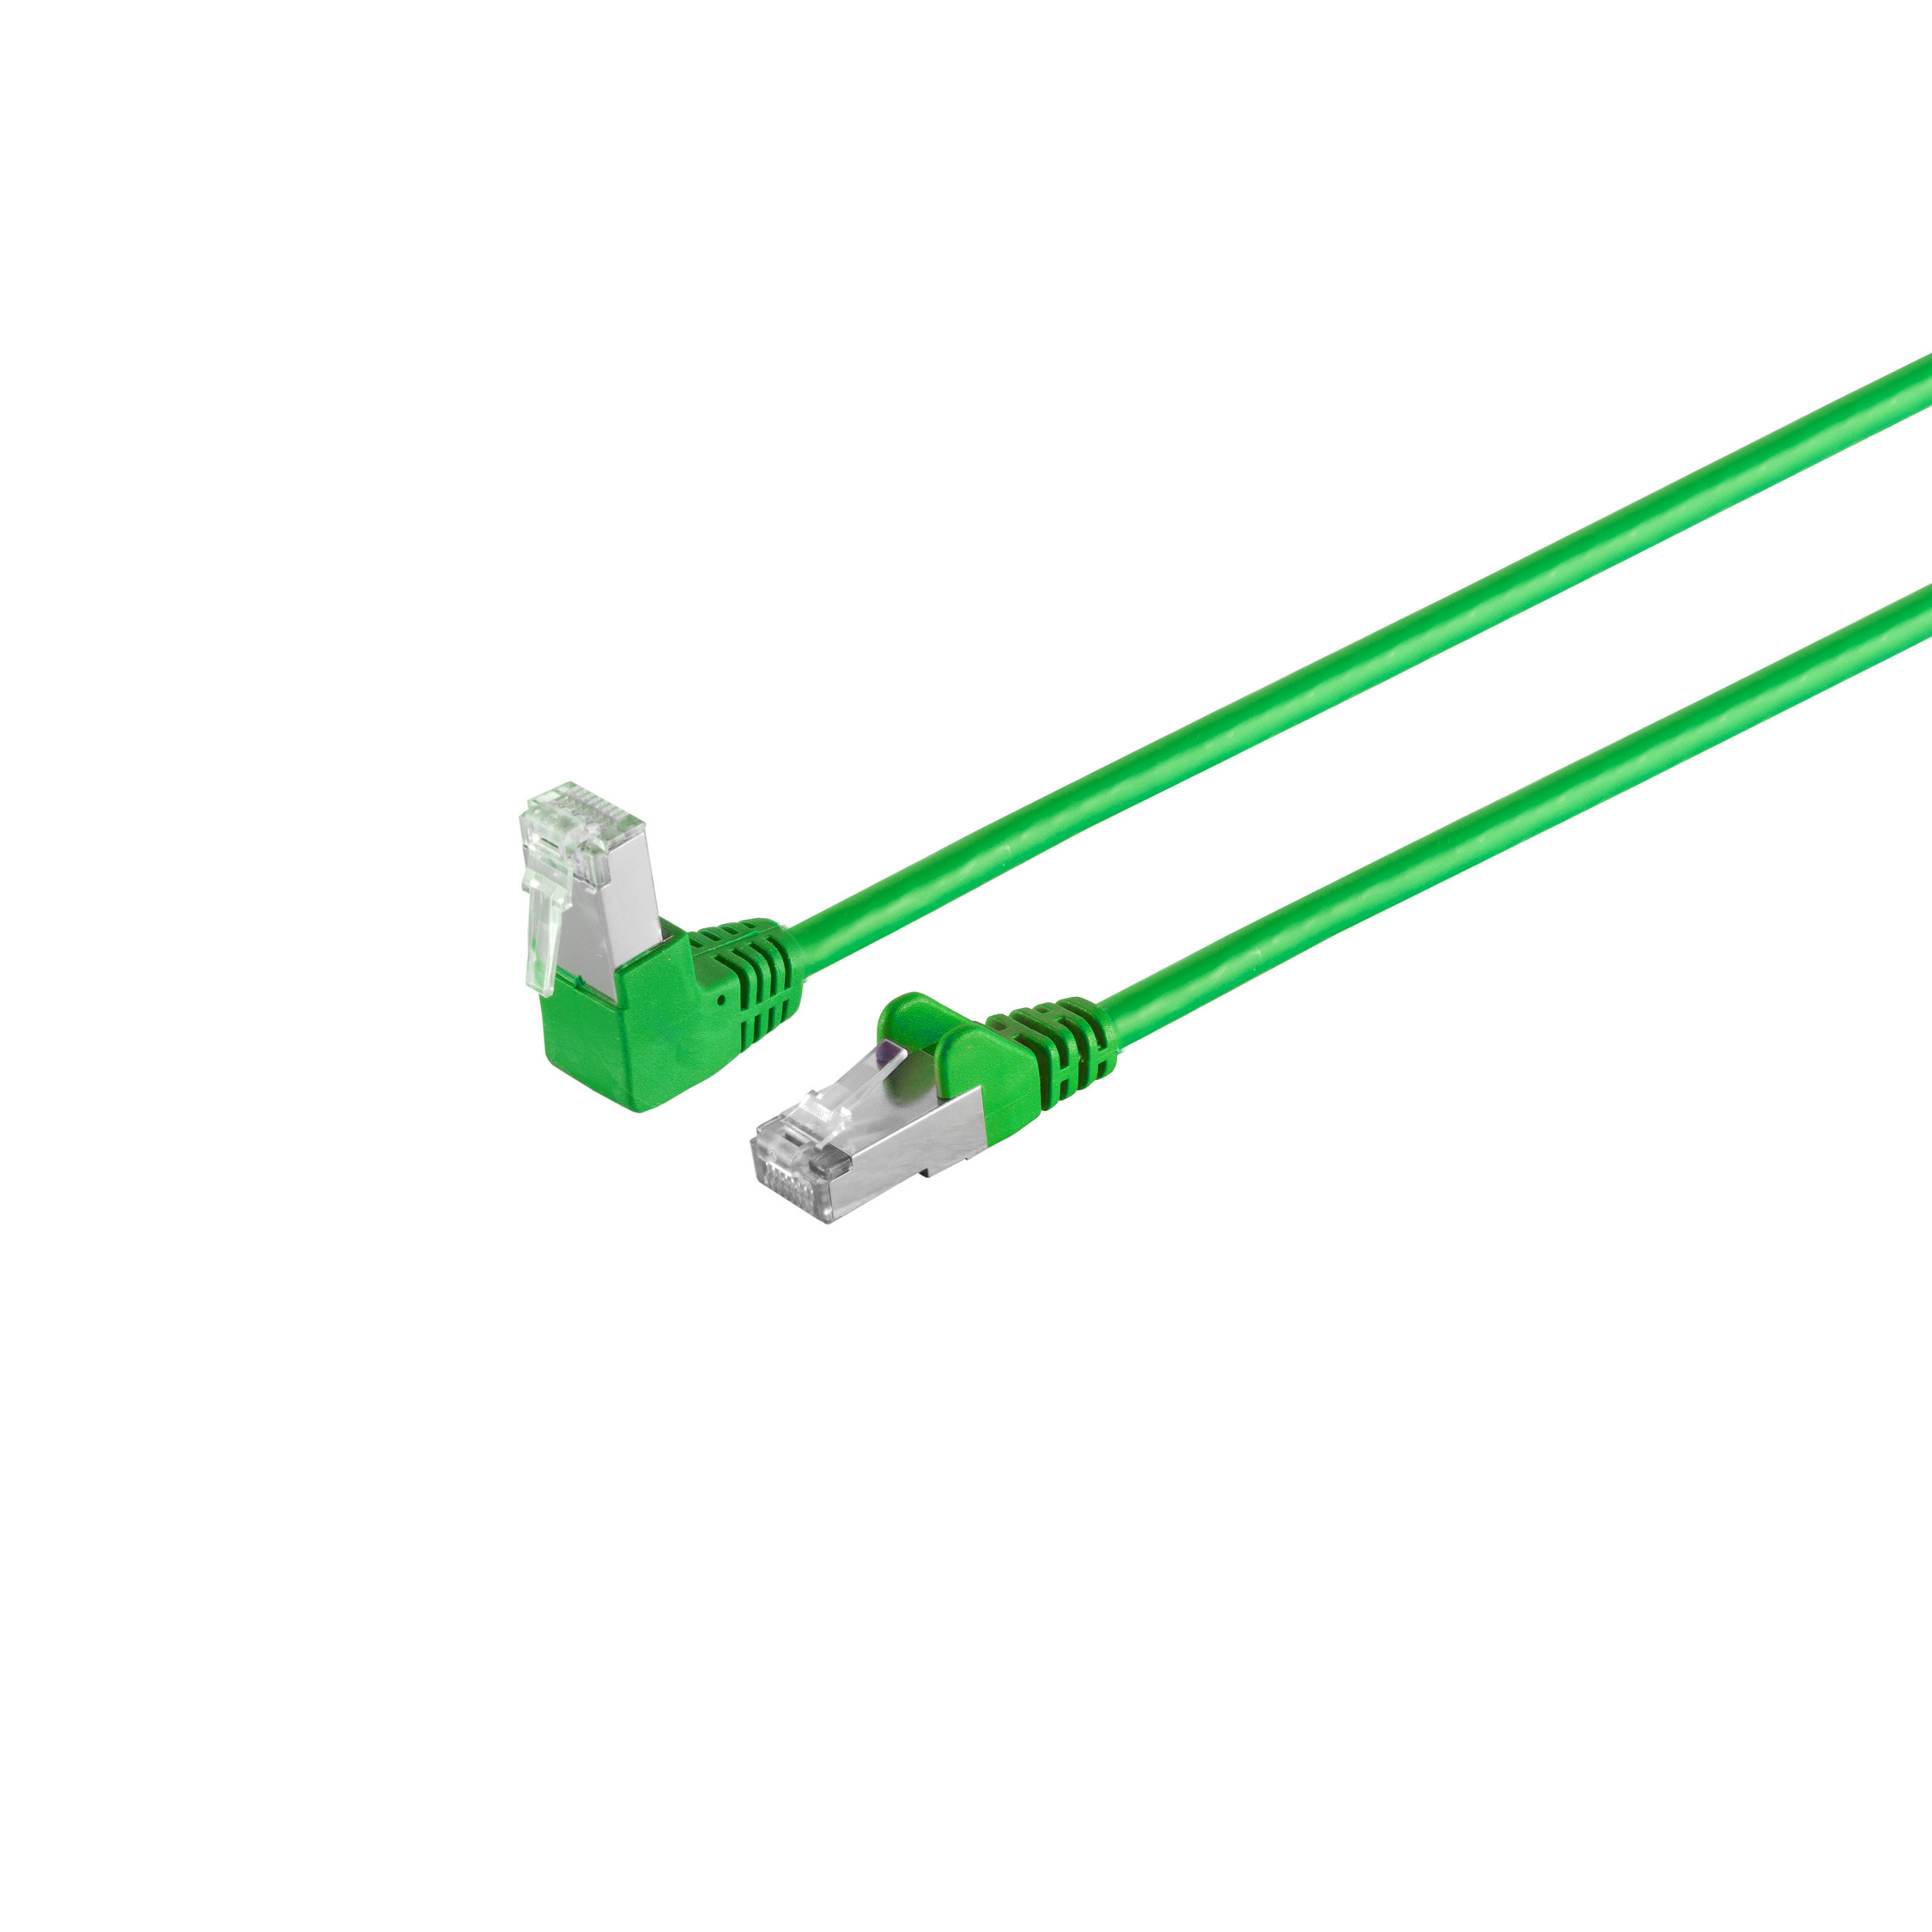 S/CONN MAXIMUM CONNECTIVITY Kabel cat 6 m Patchkabel grün PIMF S/FTP RJ45, 0,5m, Winkel-gerade 0,50